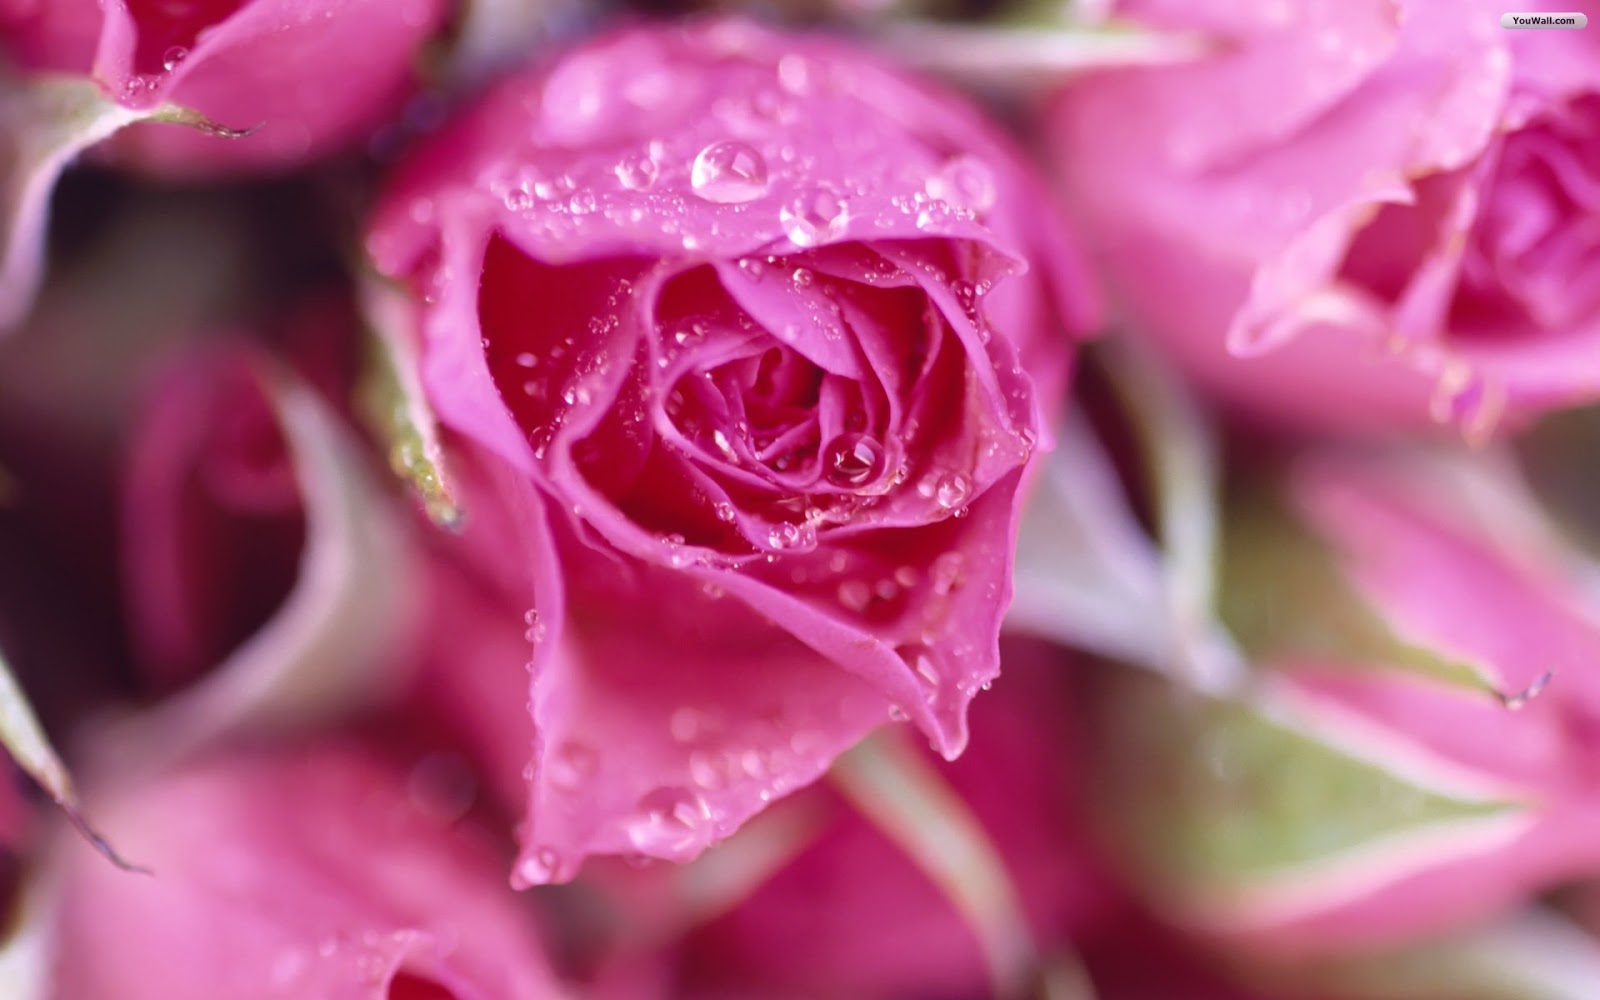 belle immagini di rose per carta da parati,fiore,rose da giardino,pianta fiorita,rosa,petalo